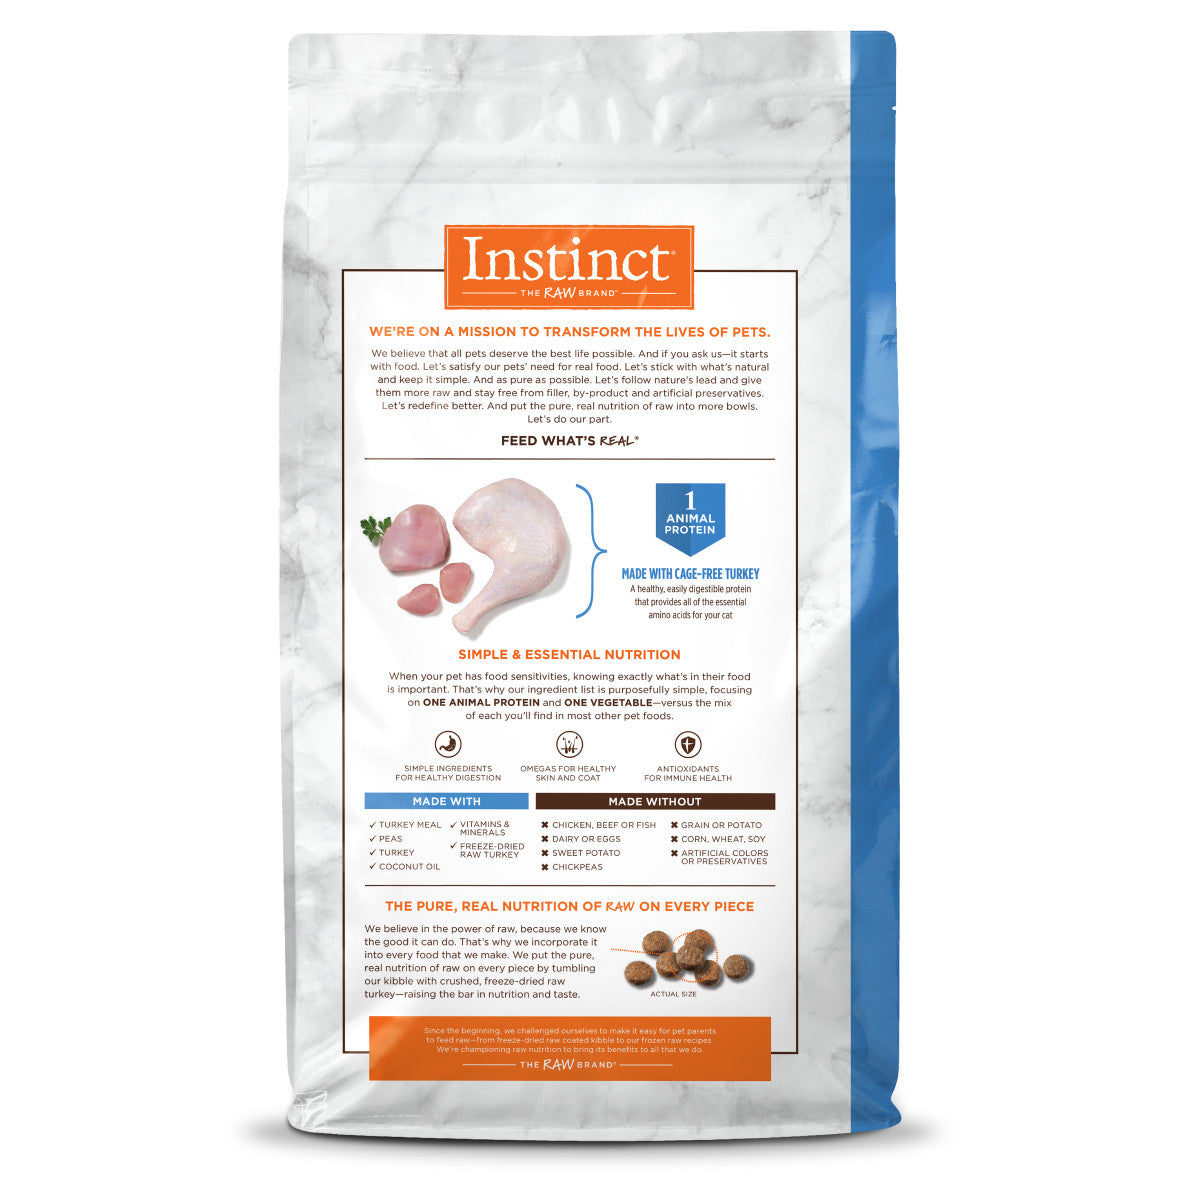 Instinct - Limited Ingredient Diet Real Turkey Recipe